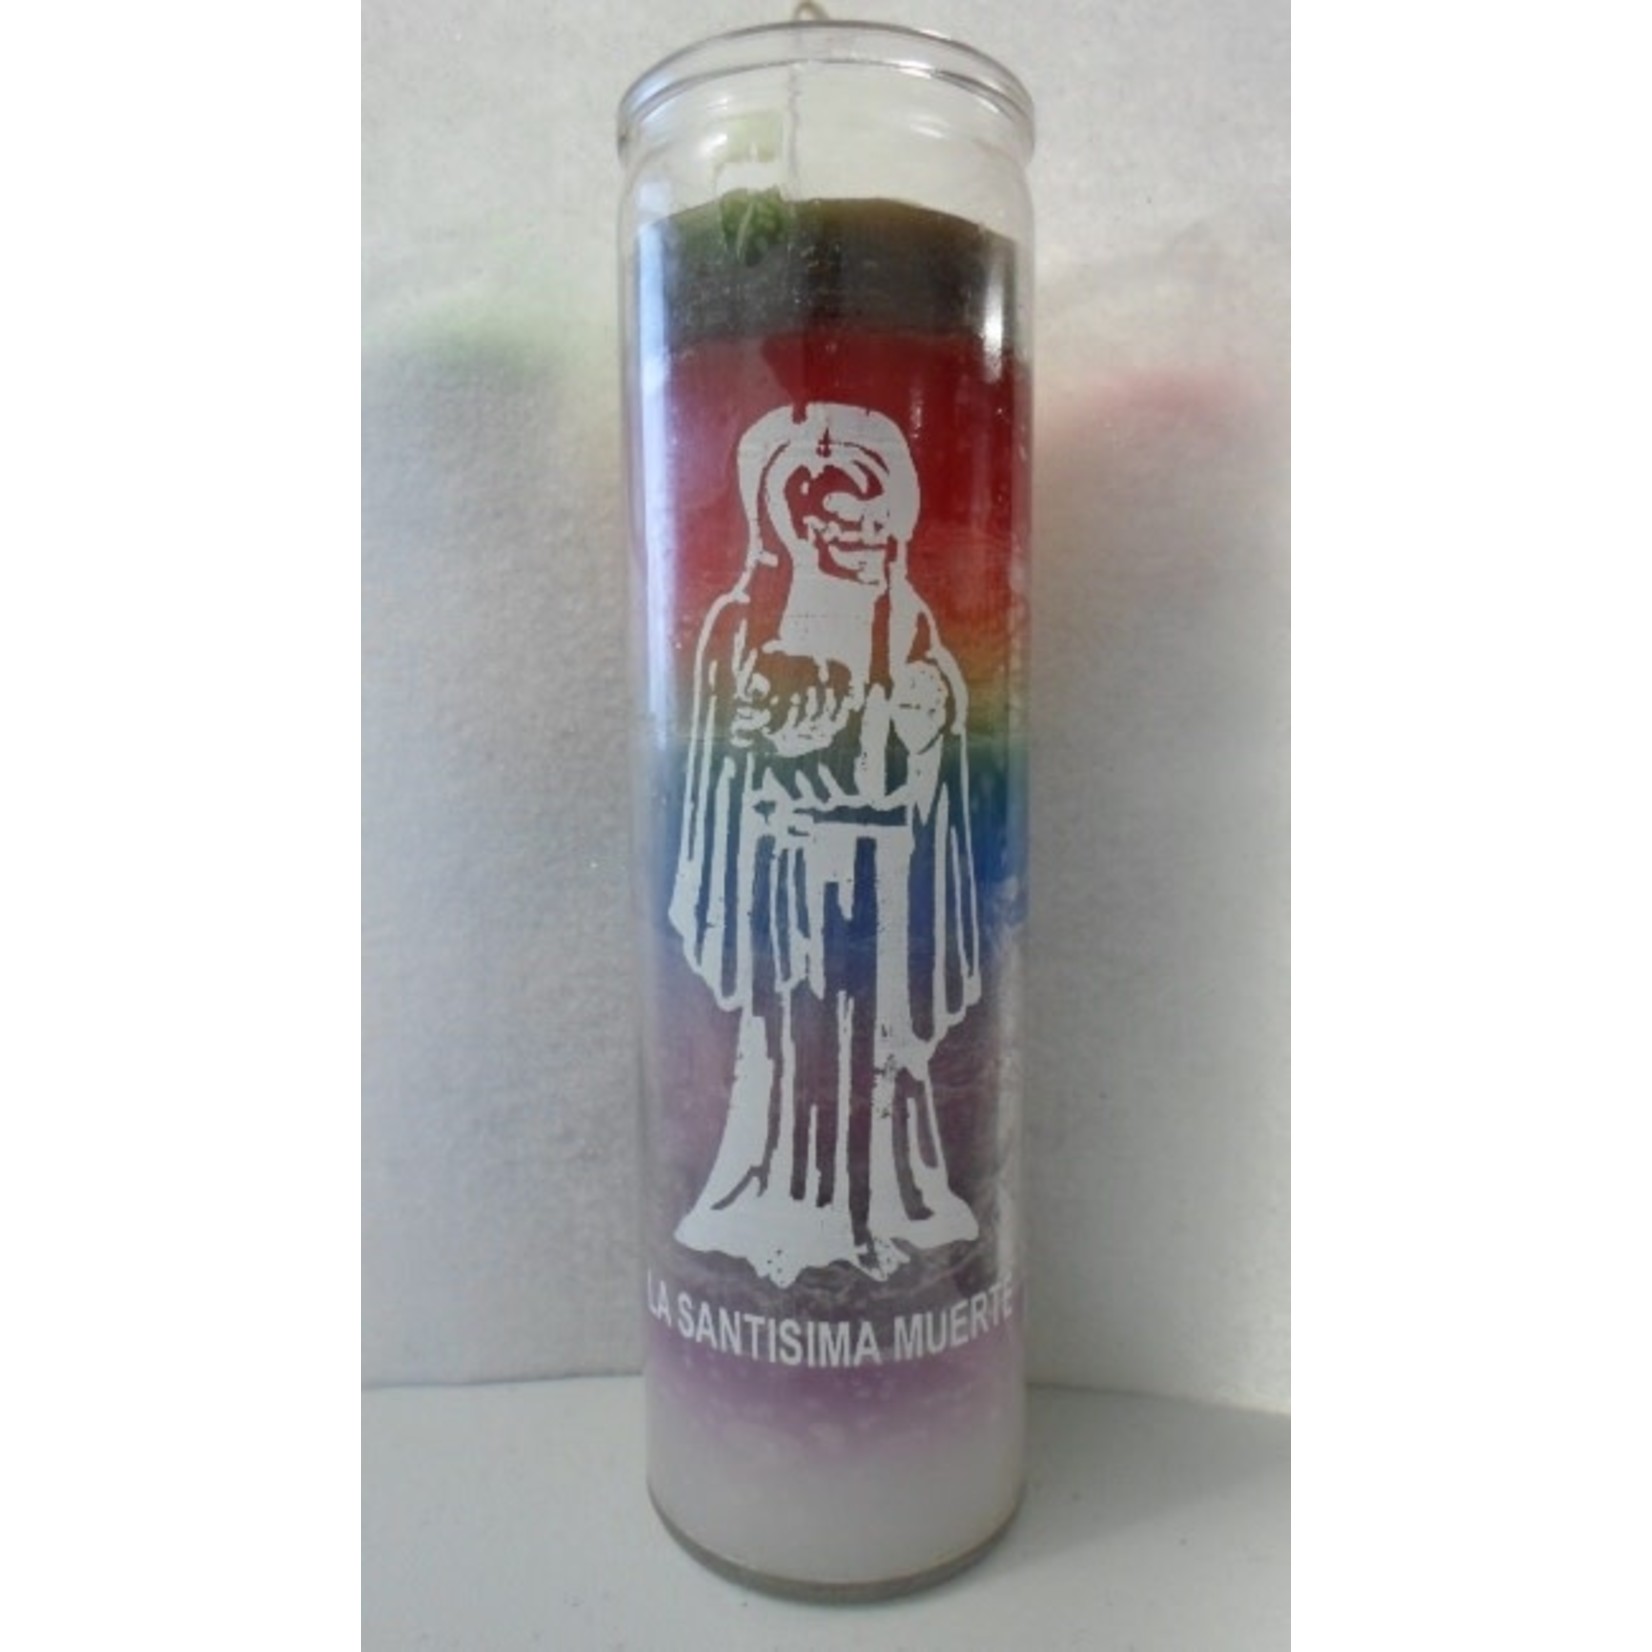 Vela Santa Muerte 7 Colores / Holy Death Candle 7 Colors